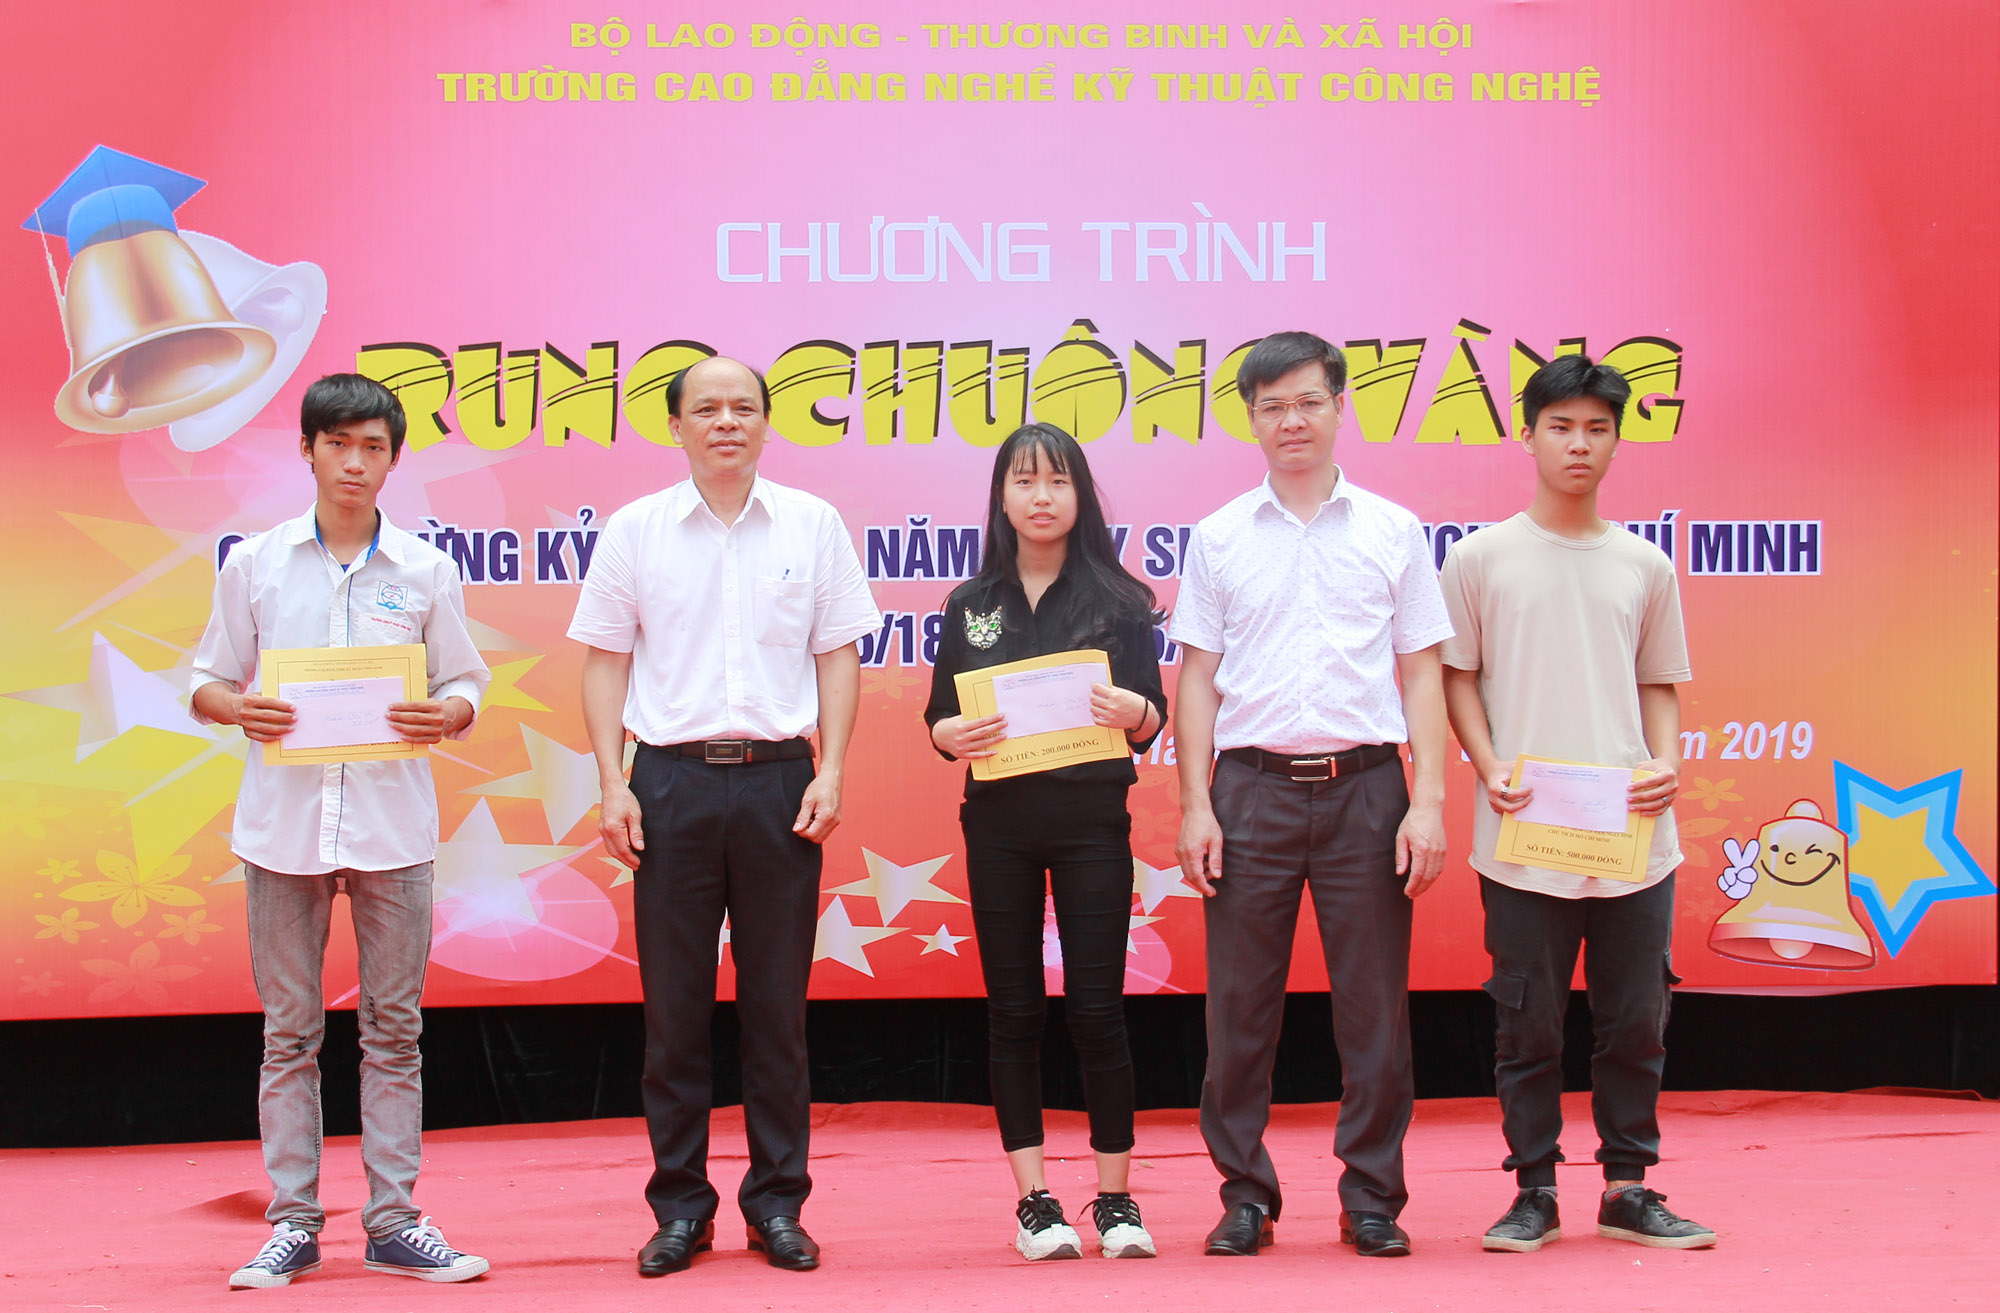 Trường CĐN Kỹ thuật Công nghệ tổ chức chương trình Rung chuông vàng năm 2019